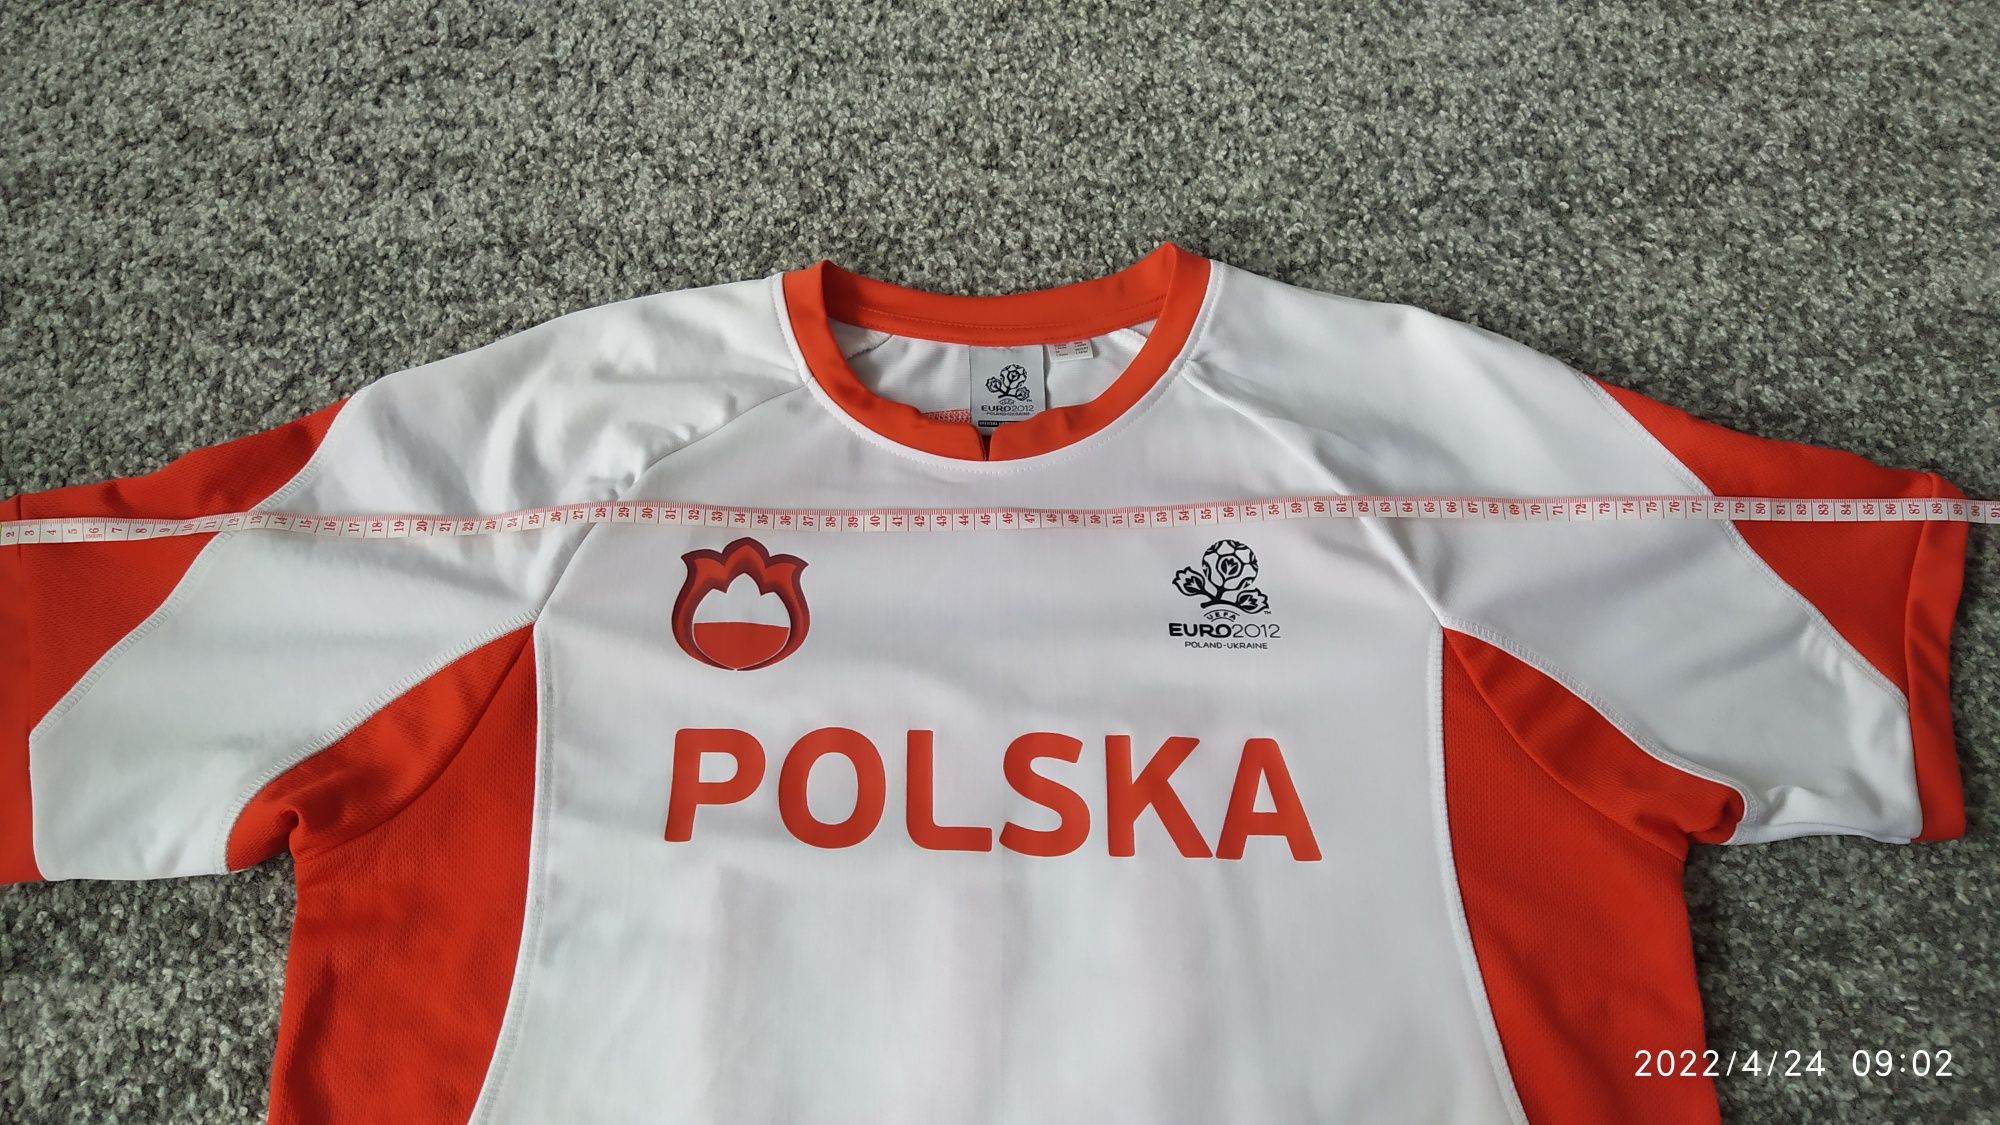 Koszulka Polska.